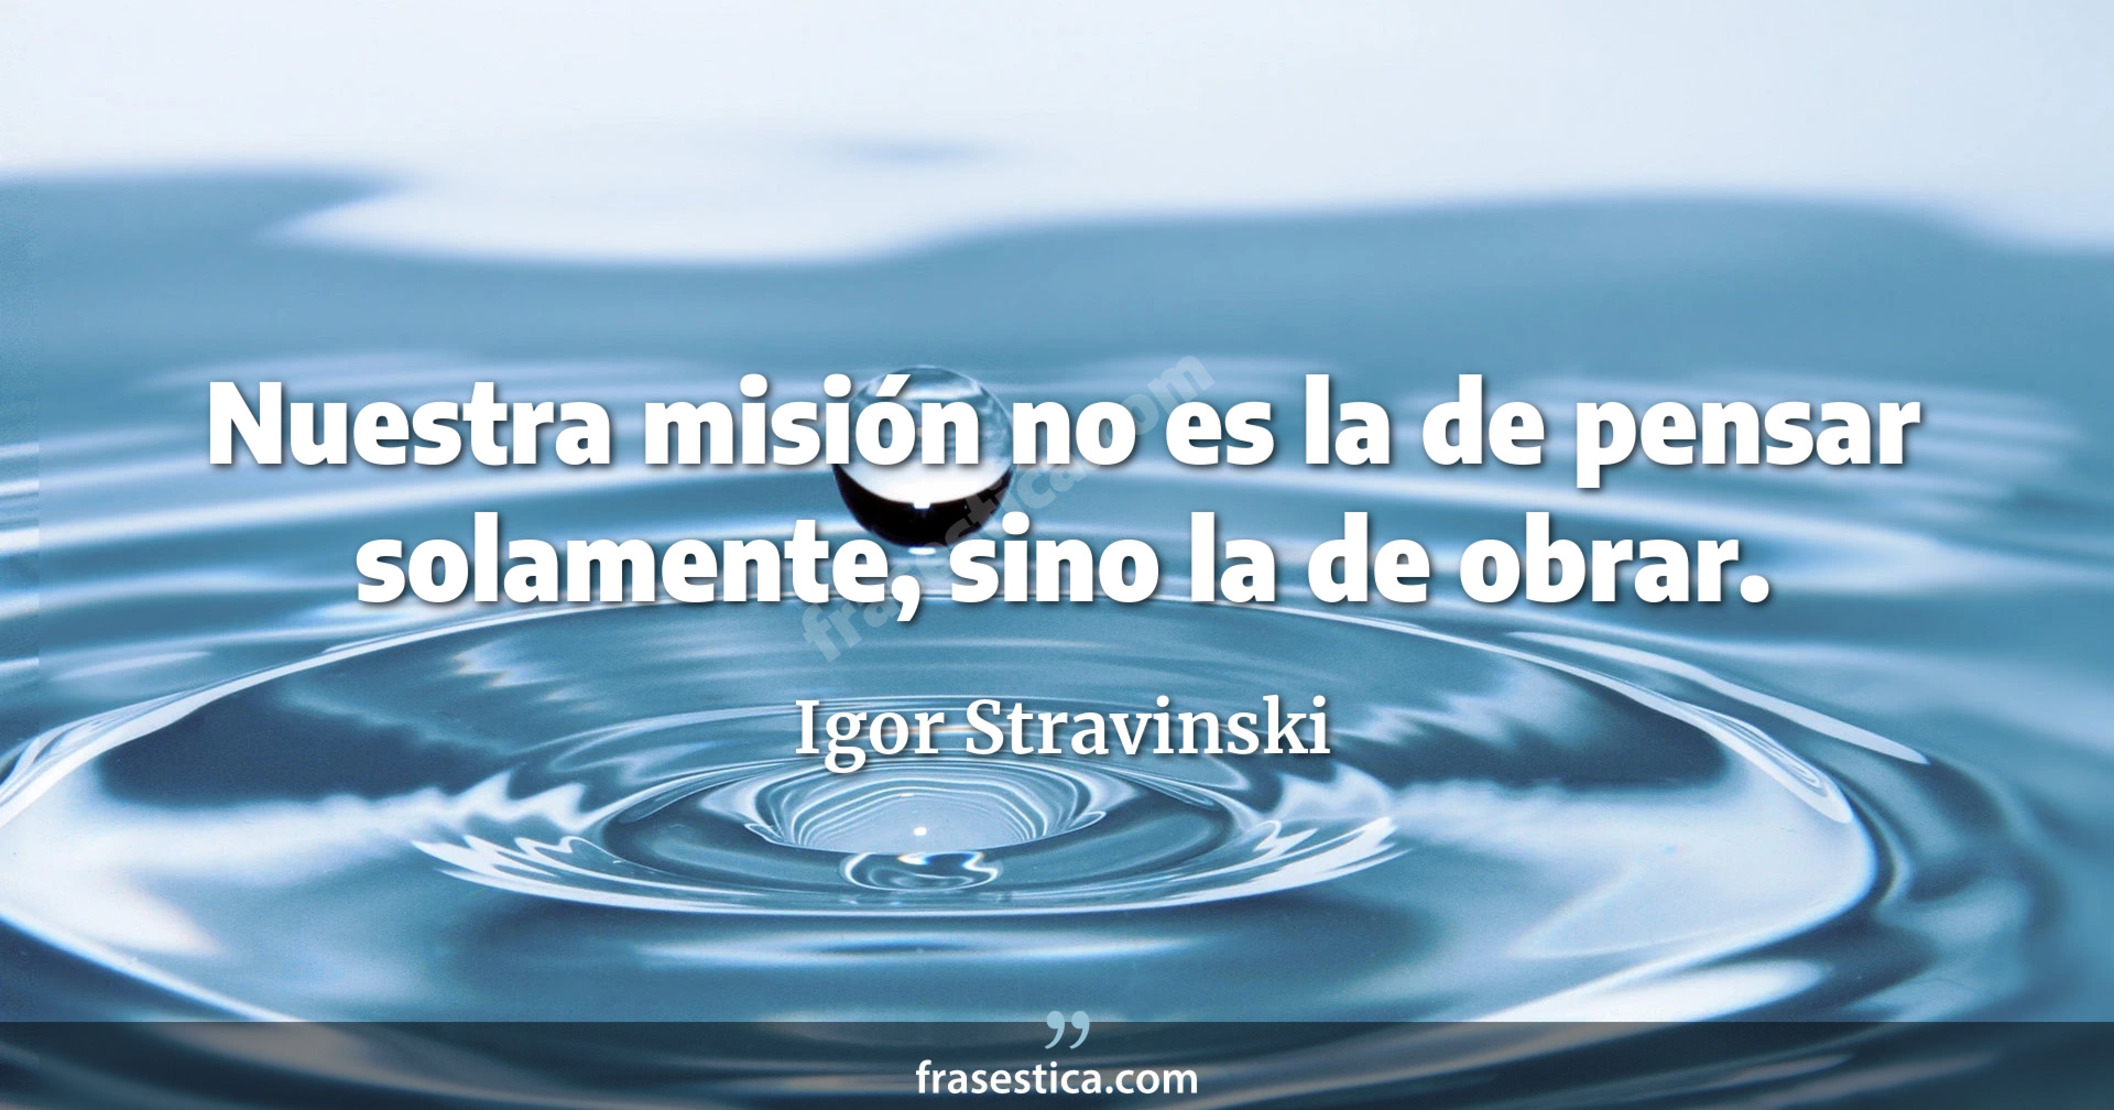 Nuestra misión no es la de pensar solamente, sino la de obrar. - Igor Stravinski